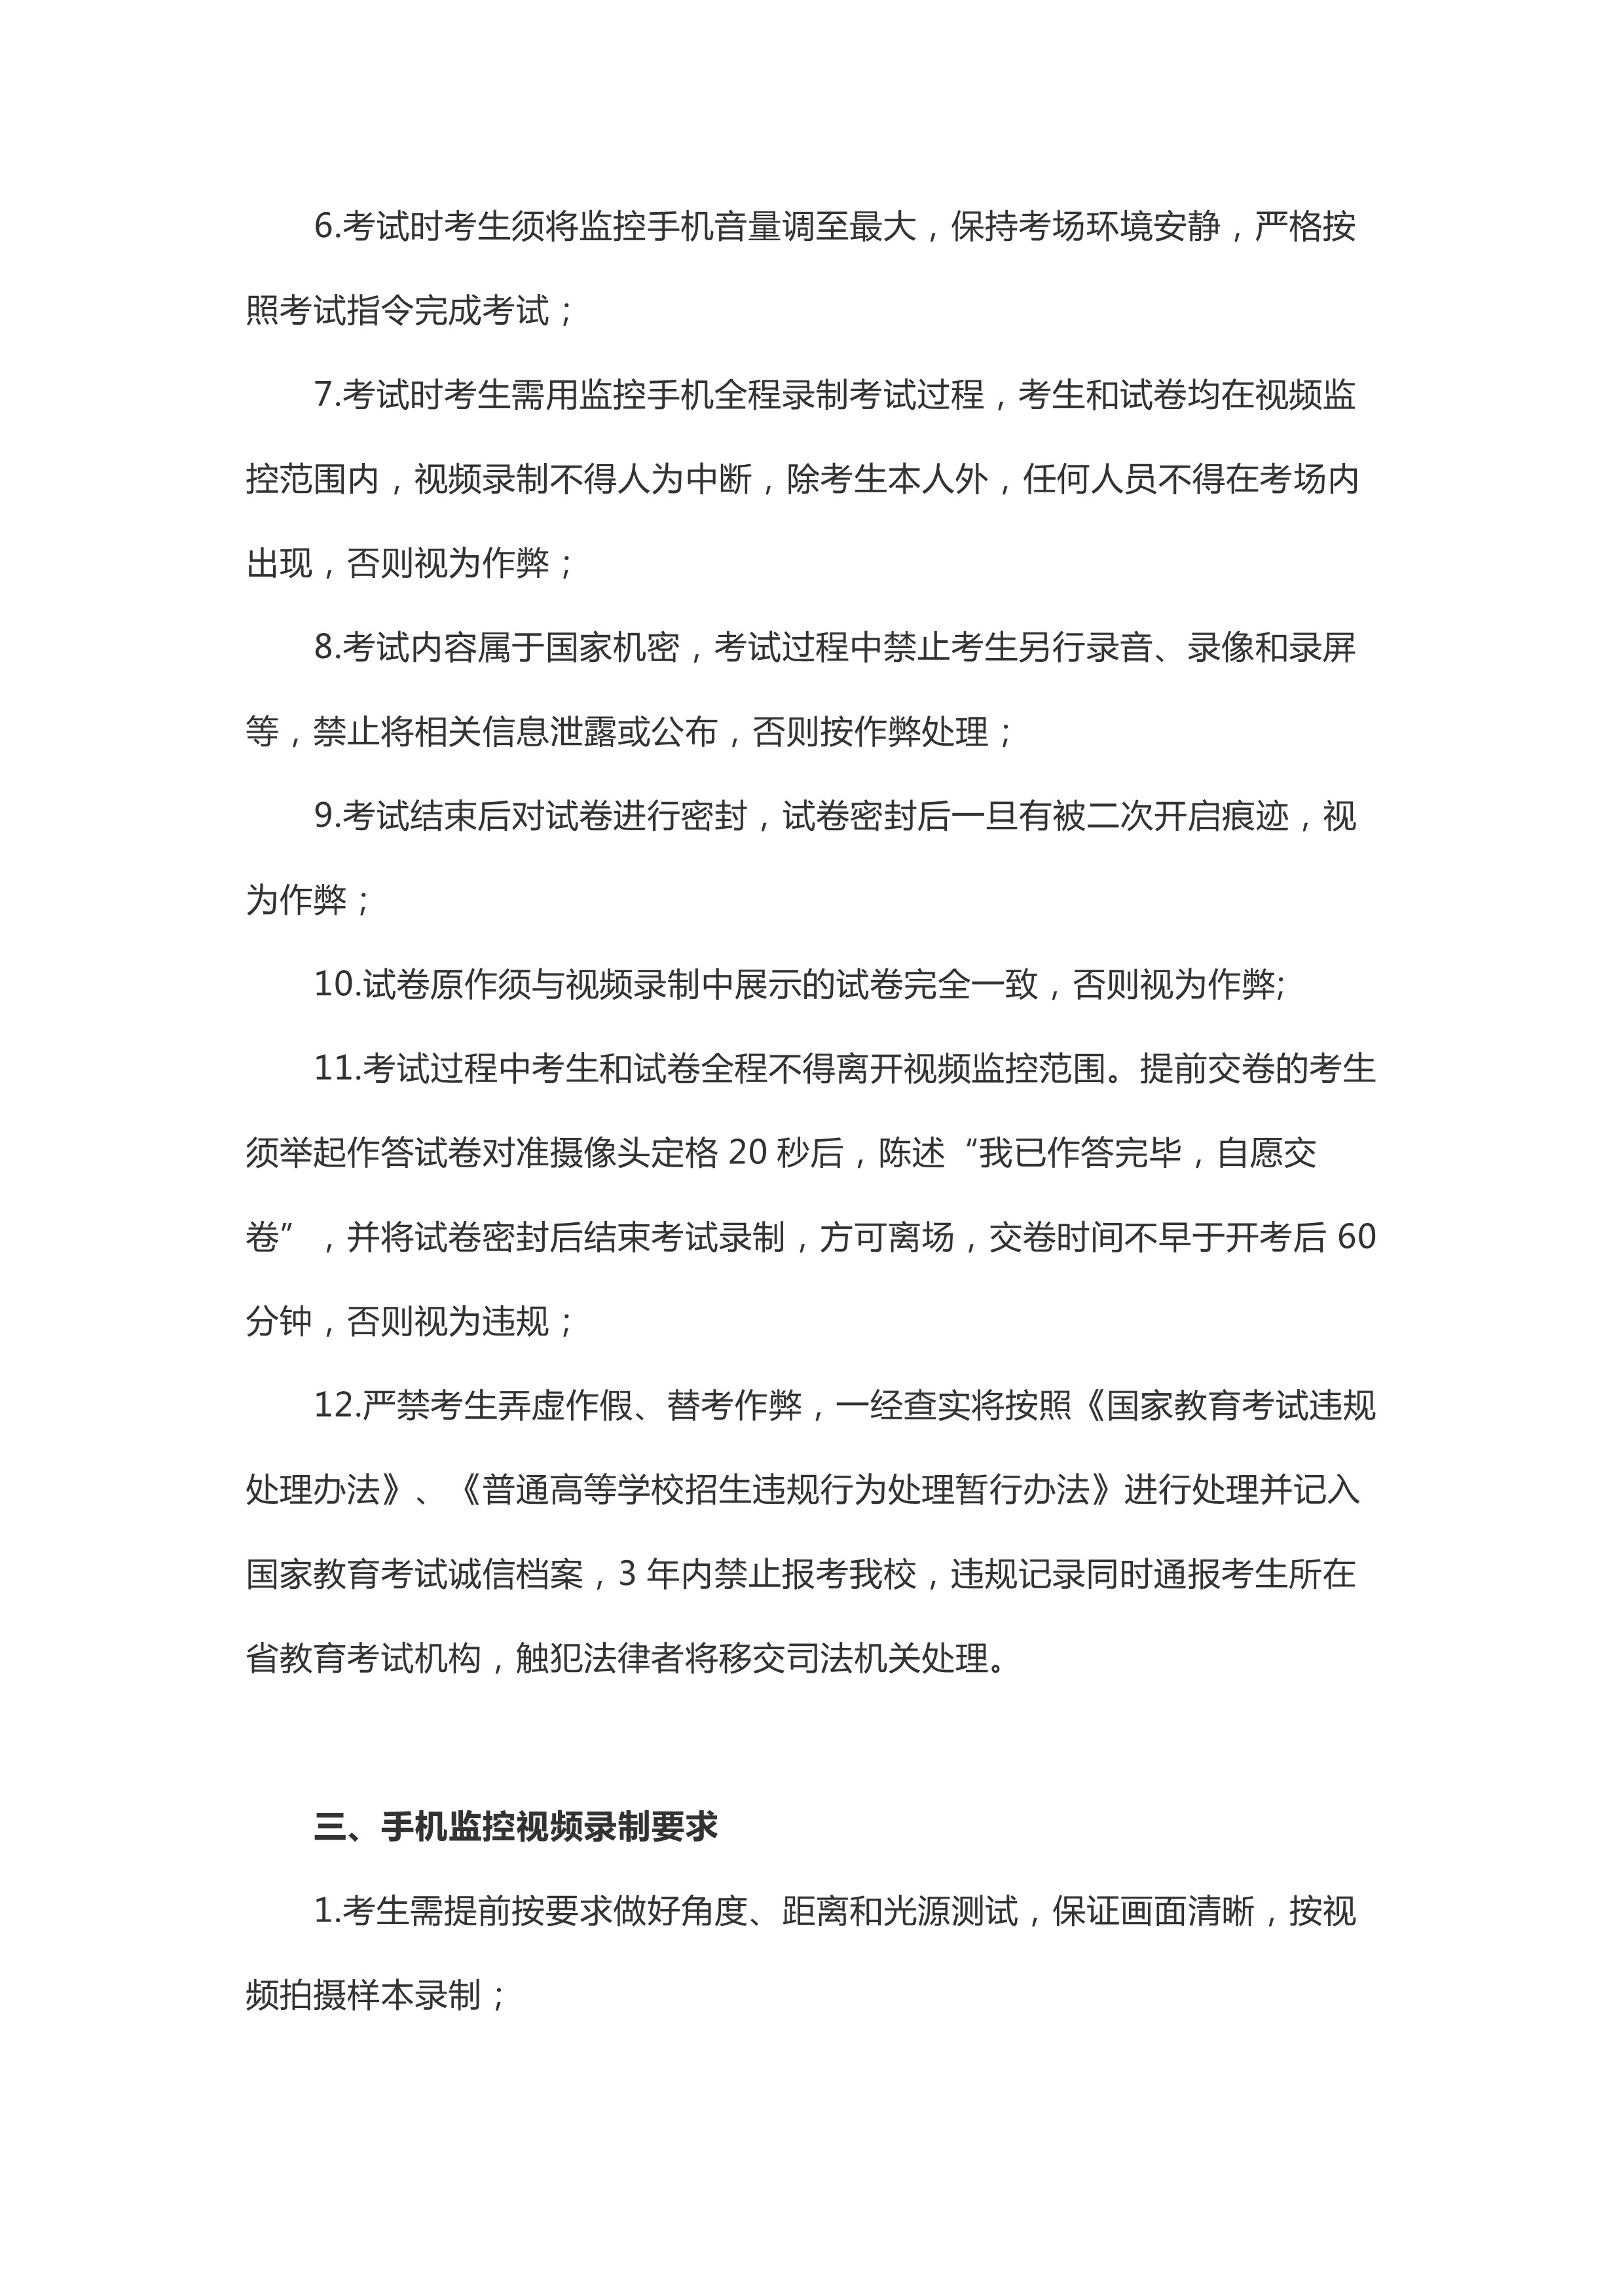 附件1：鲁迅美术学北京考生2020年本科招生专业网络考试须知_2.jpg